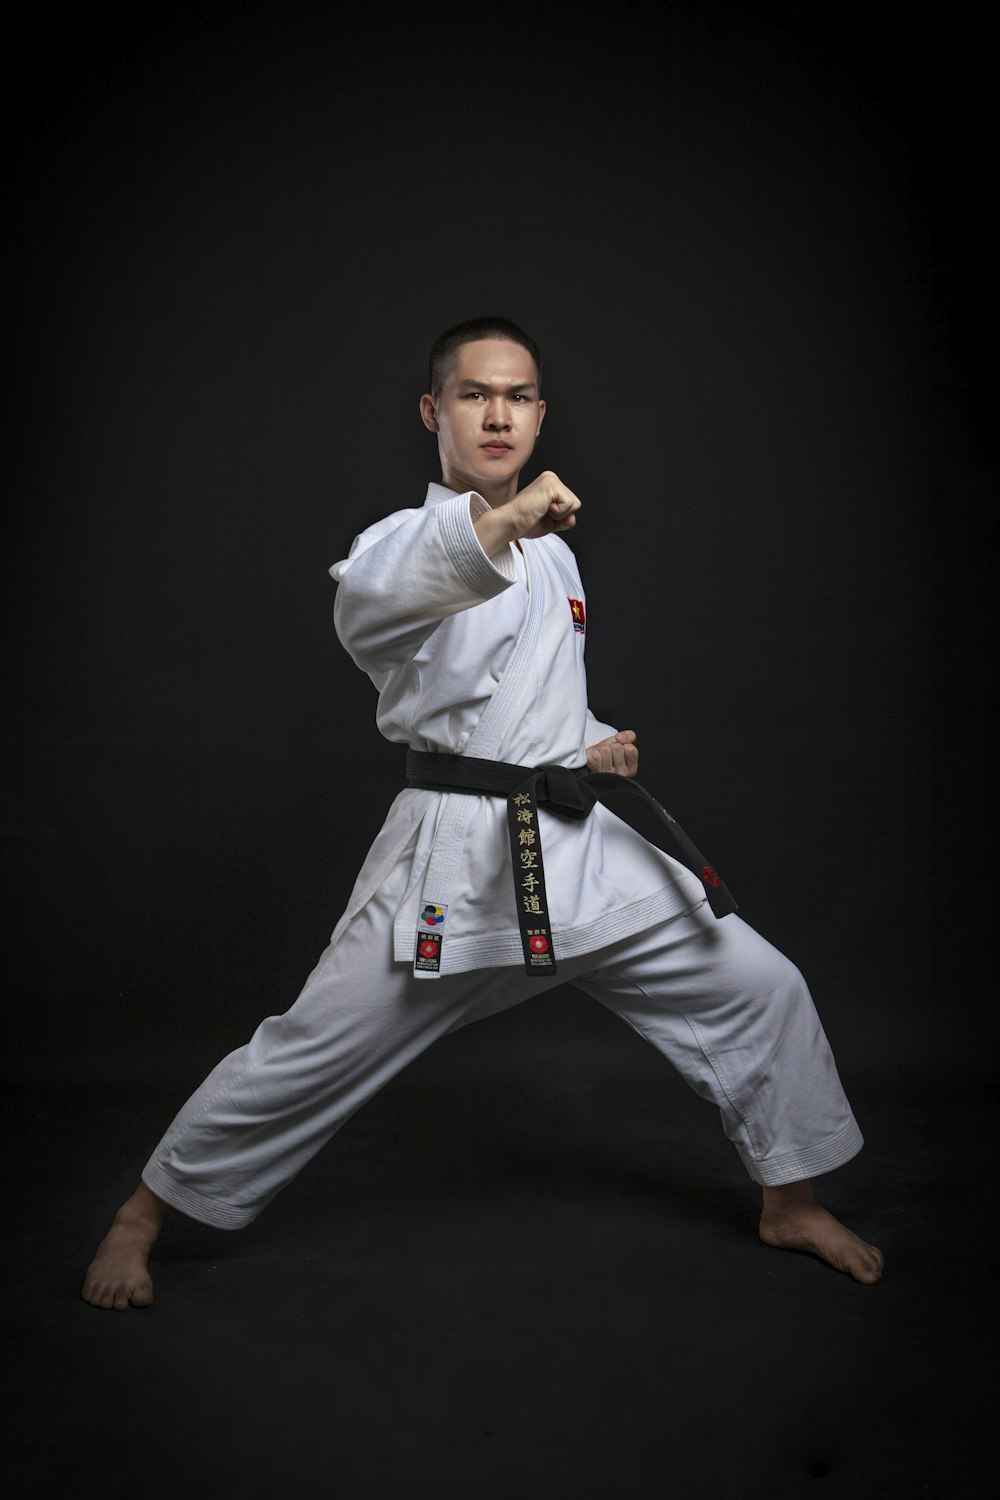 a man in a karate uniform